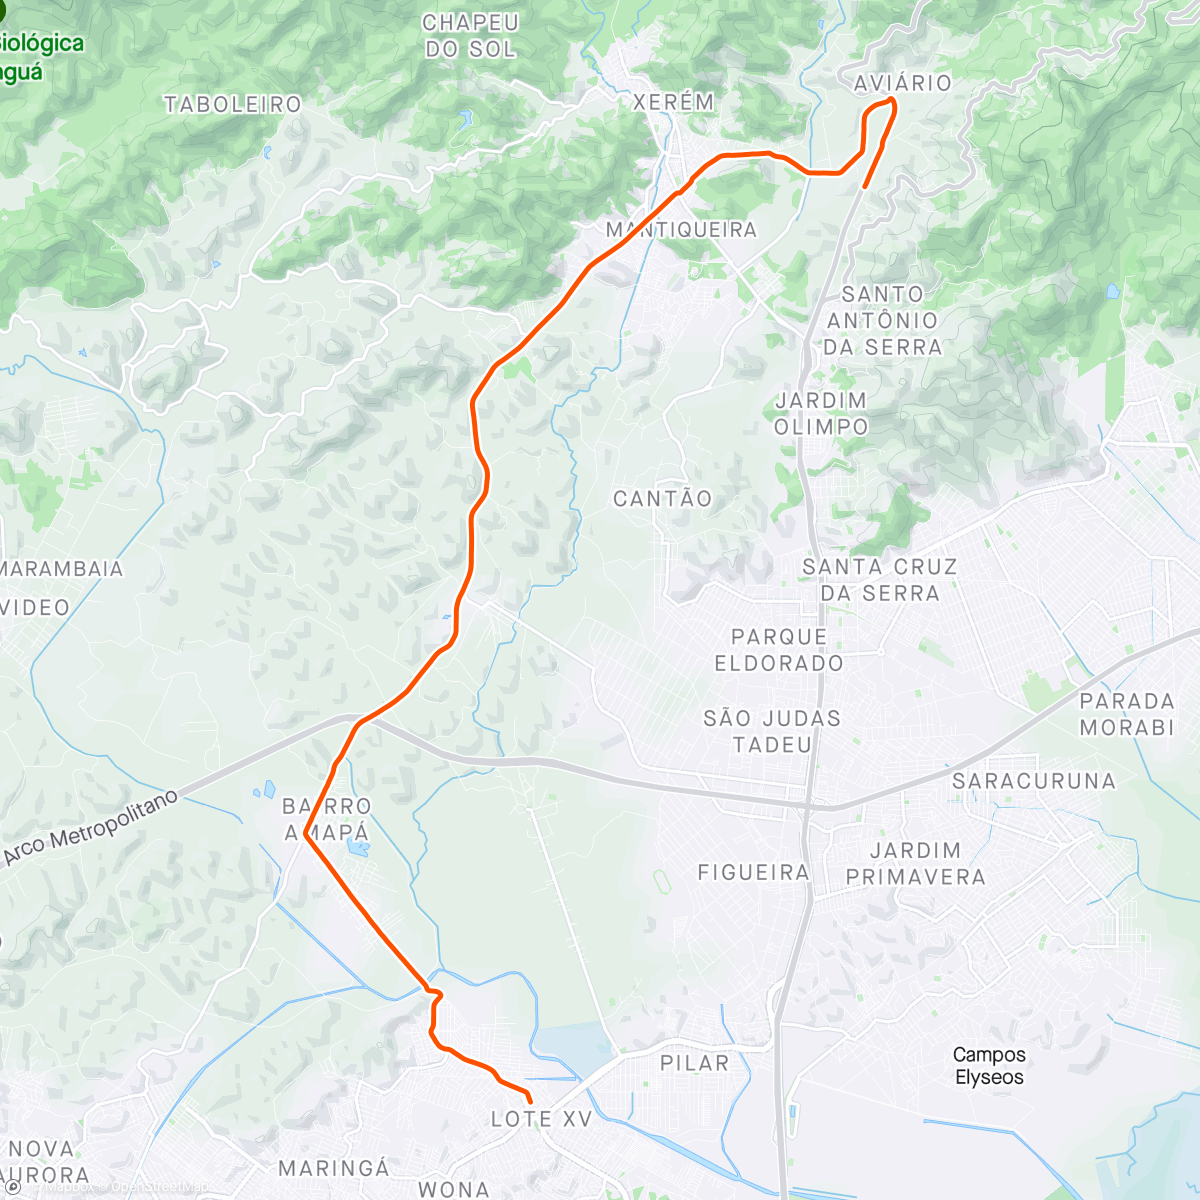 Map of the activity, Hoje foi dia de Berro d'água, rua do norte, subida até o queijao descendo a trilha do chiqueiro.